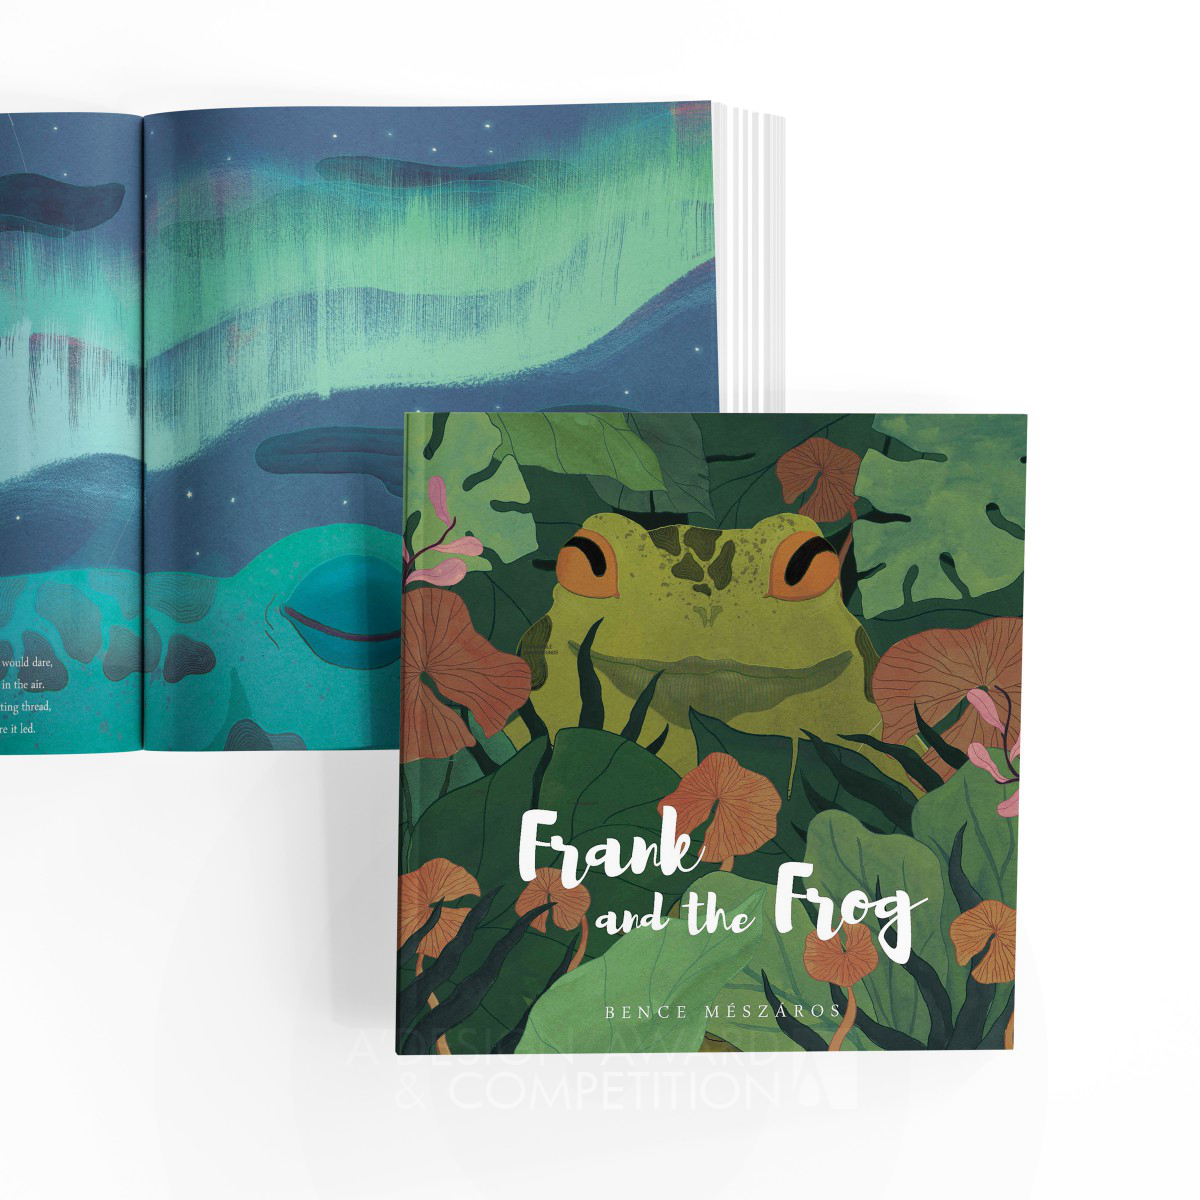 아름다운 이별을 그린 어린이 그림책, '프랭크와 개구리'